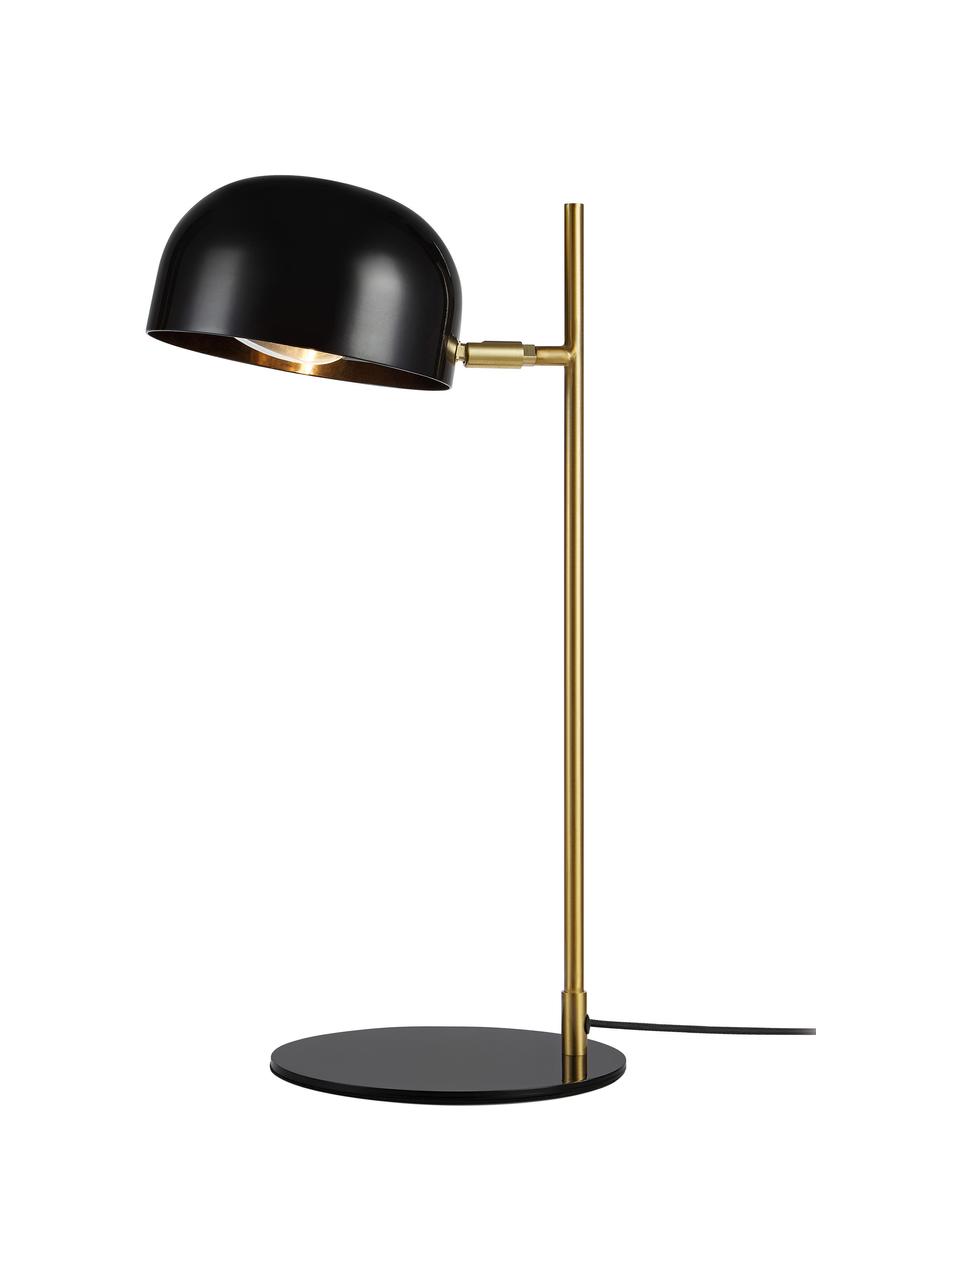 Moderne Schreibtischlampe Pose in Schwarz/Goldfarben, Lampenschirm: Metall, beschichtet, Schwarz, Goldfarben, T 29 x H 49 cm